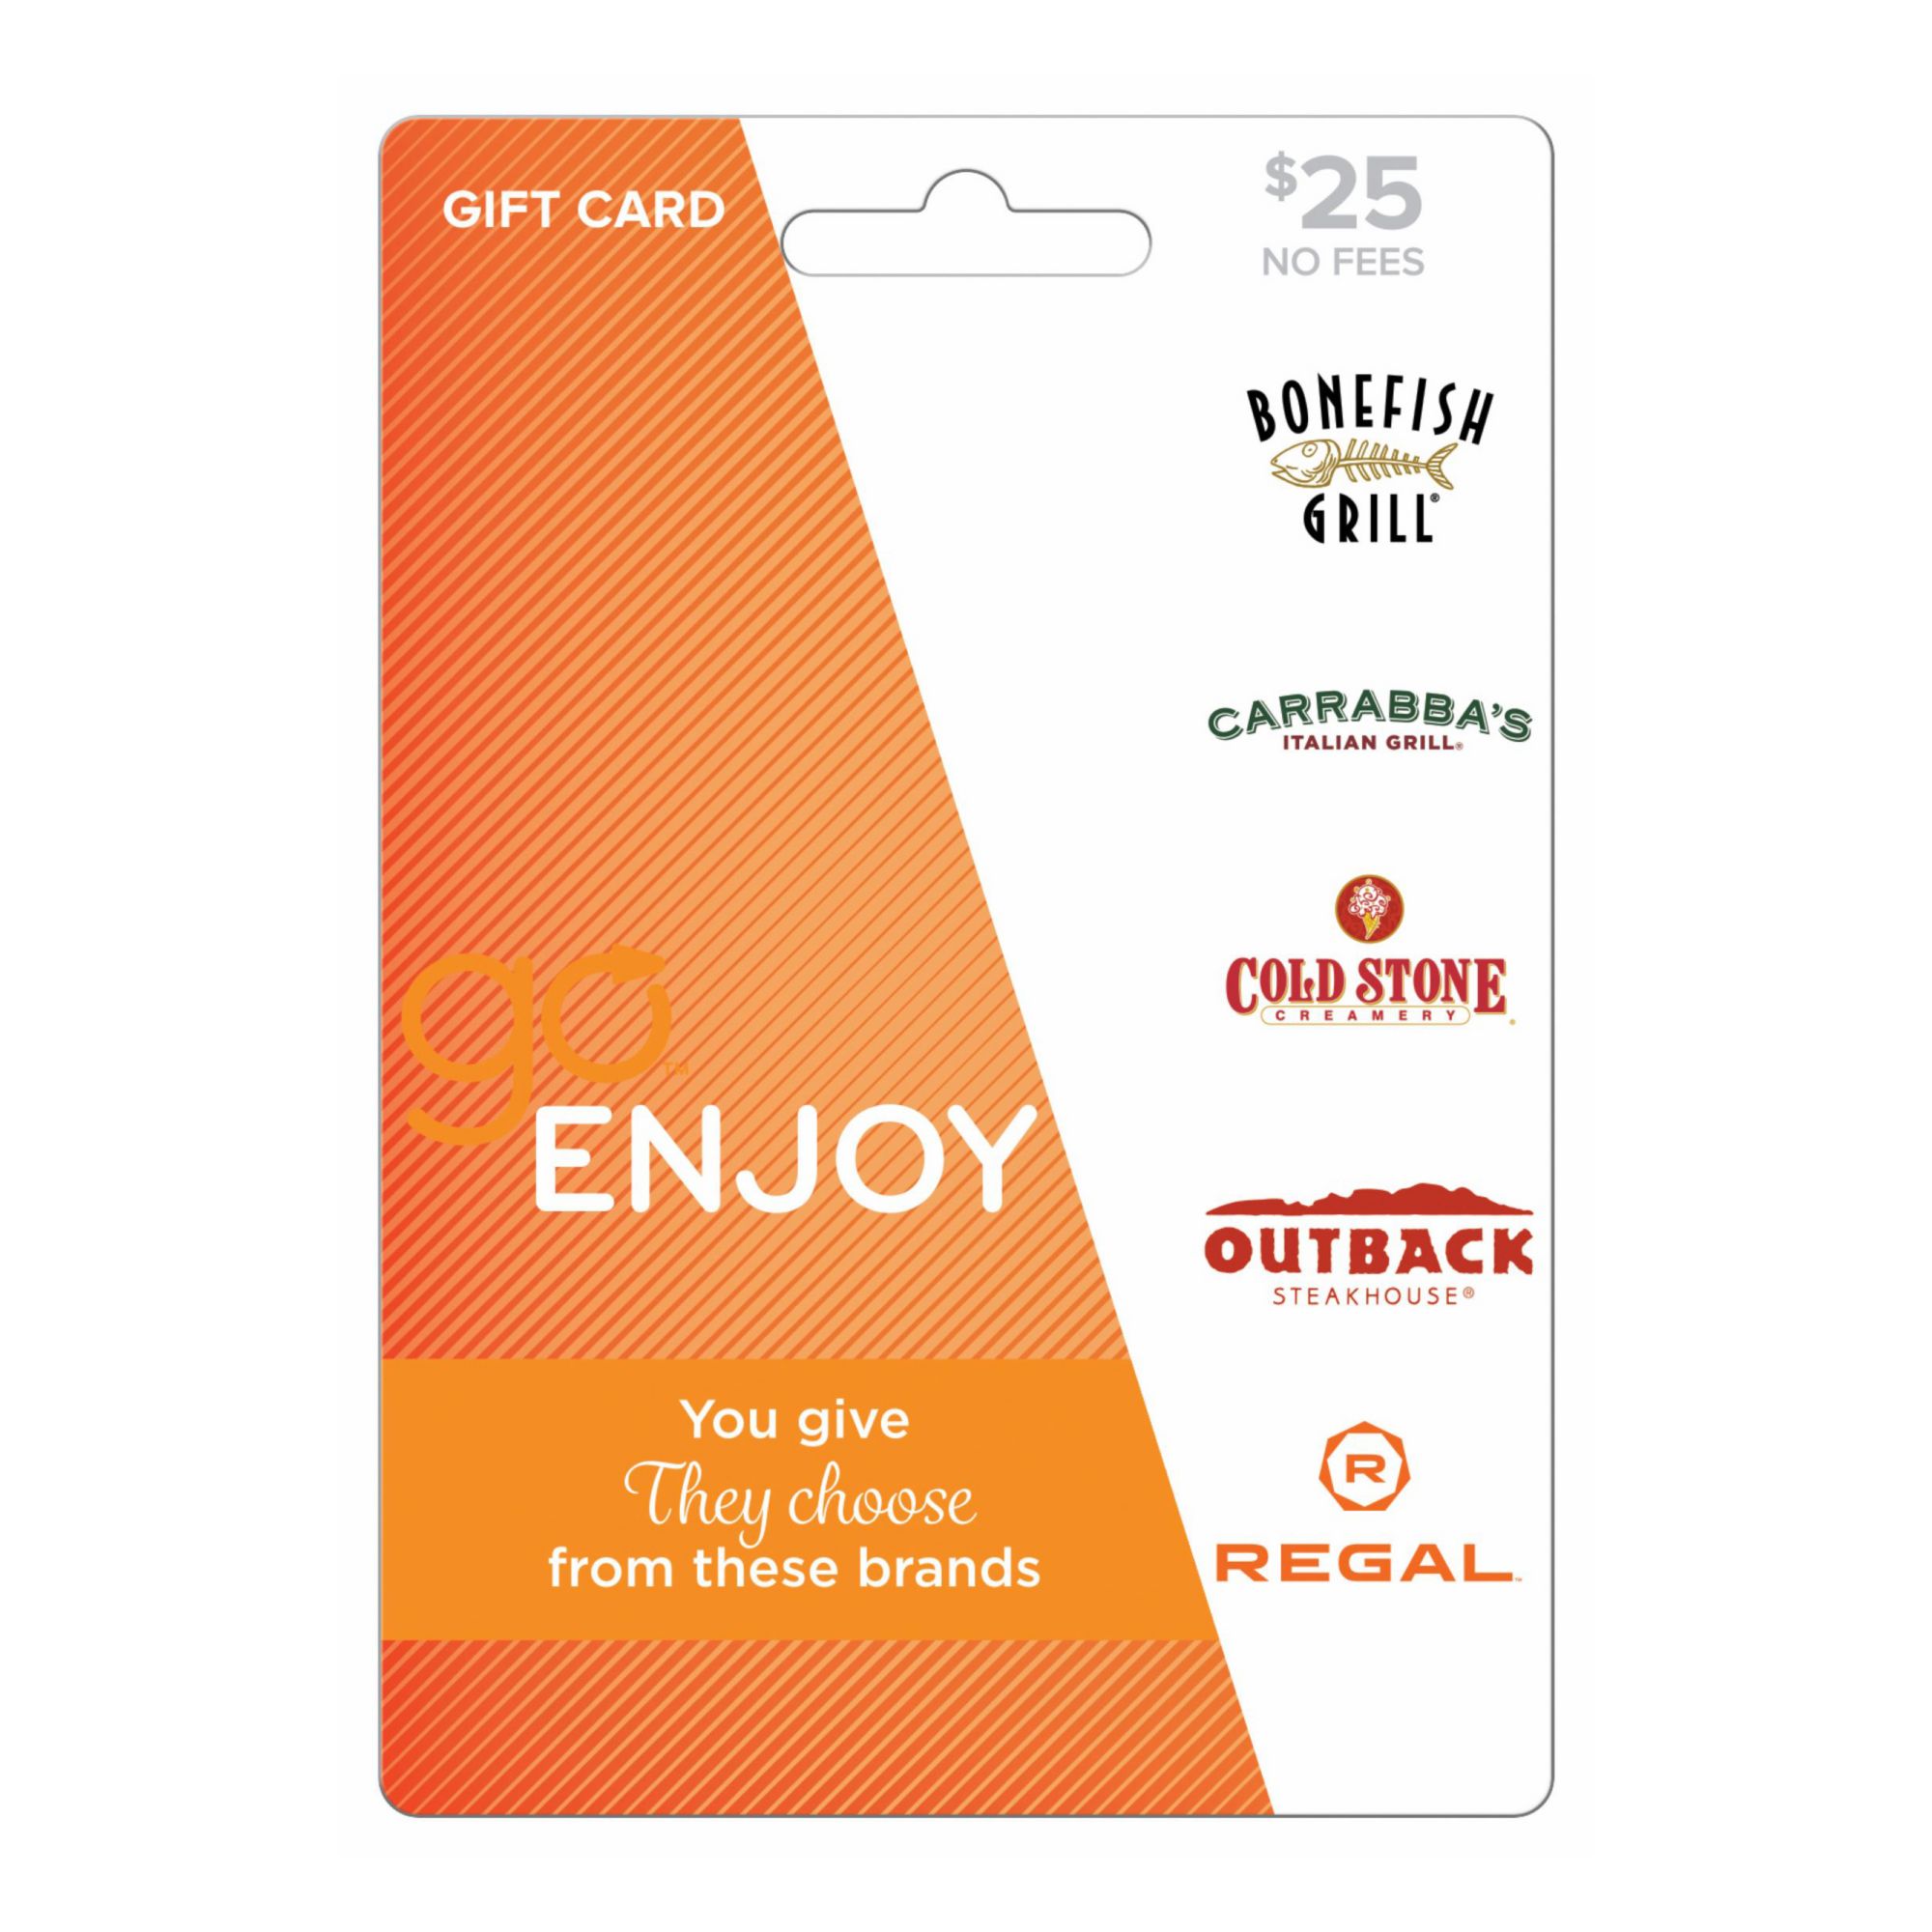 Go Cards $25 GO Enjoy Gift Card, 5.5" x 3.75" x 0.01"